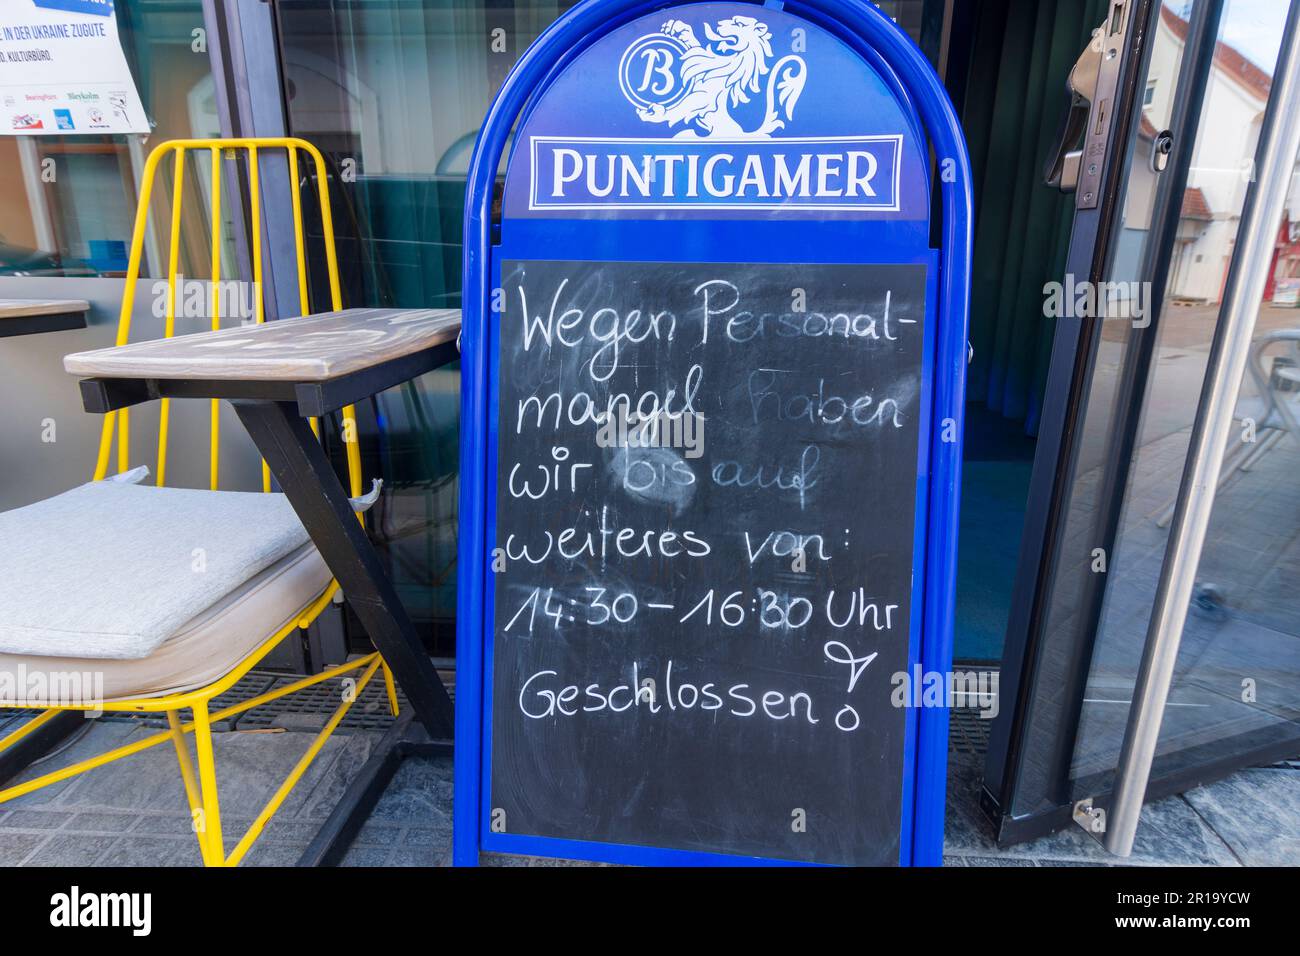 Weiz: sign at restaurant 'Wegen Personalmangel haben wir bis auf weiteres von ... geschlossen' in Steirisches Thermenland - Oststeiermark, Steiermark, Stock Photo